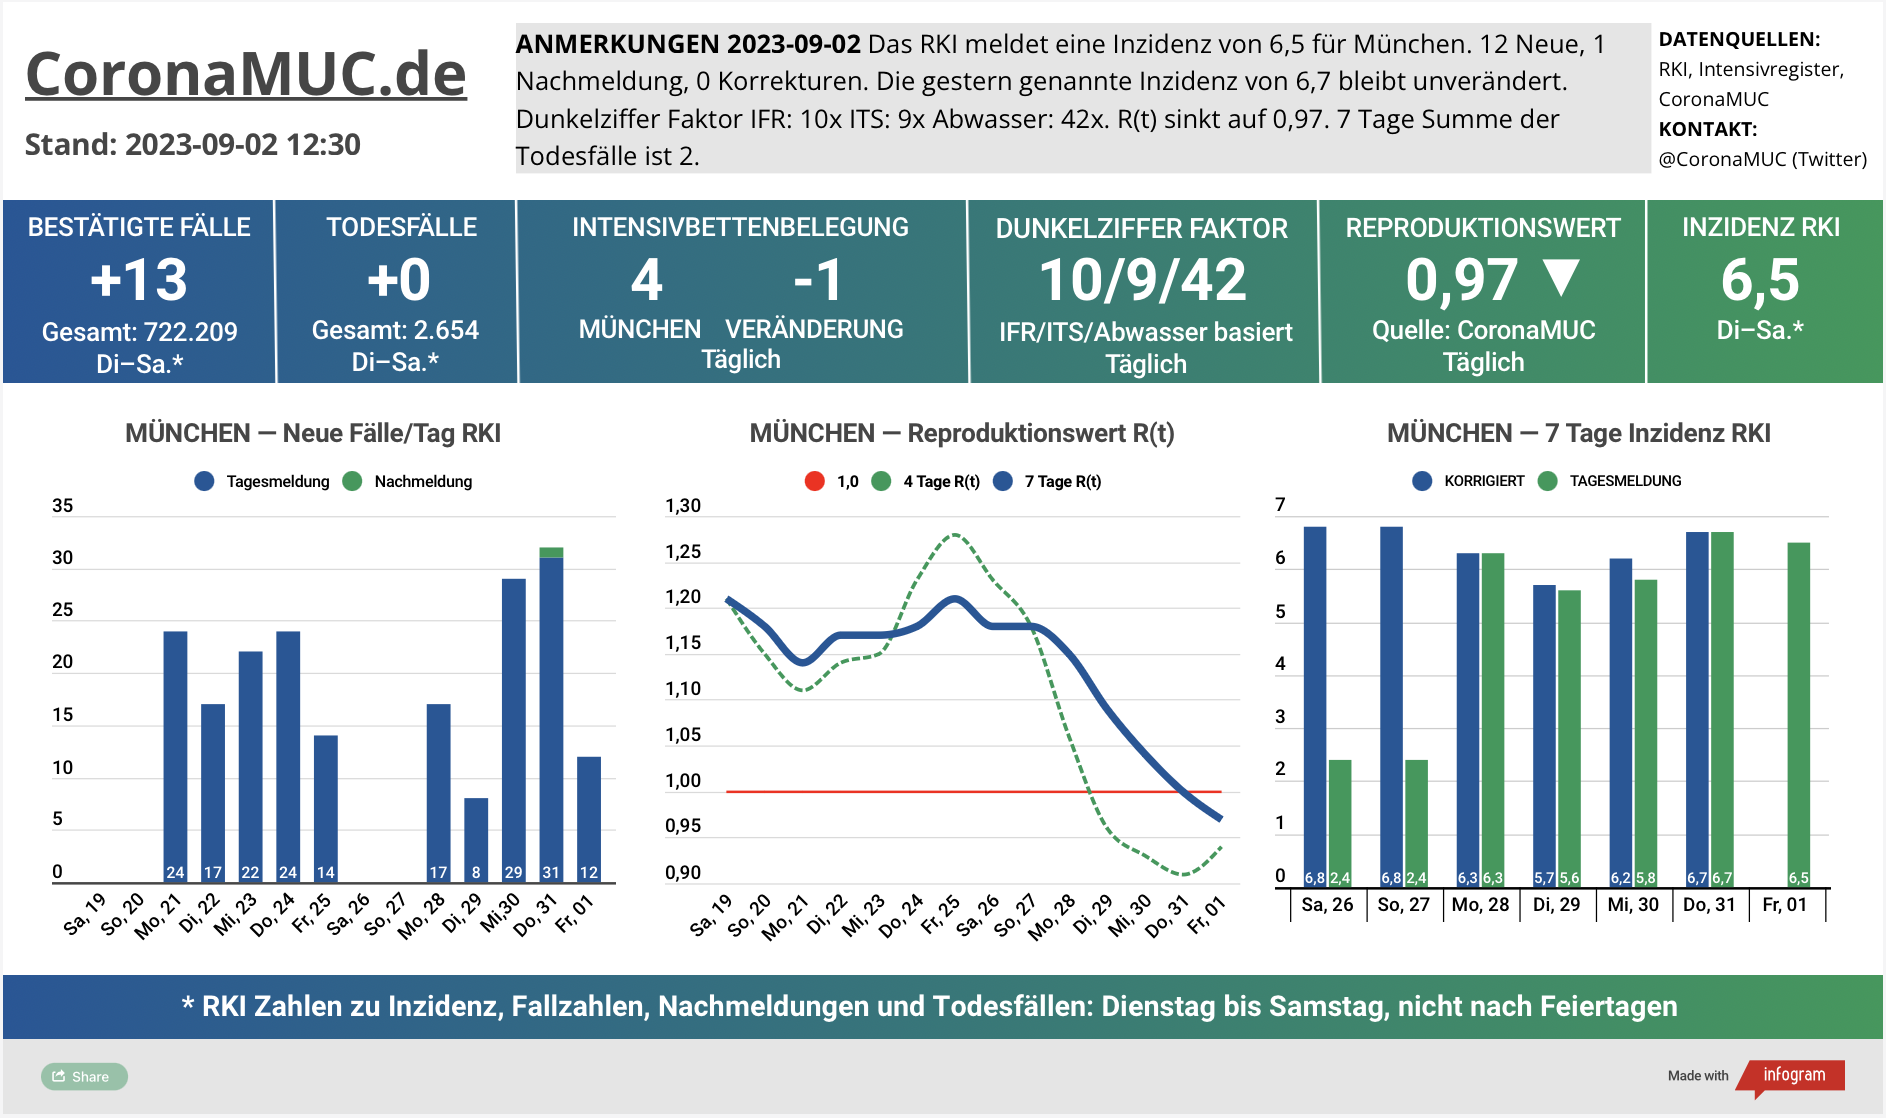 2023-09-02 Dashboard mit den Zahlen für München. Drei Graphen. Erste zeigt Neu- und Nachmeldungen, unklare Tendenz. Zweite zeigt R(t) Wert für München, der auf 0,97 sinkt. Dritte zeigt Inzidenz, die zwar weiter weit unter 50 liegt aber wegen mangelnder PCR Tests kaum noch aussagekräftig ist.